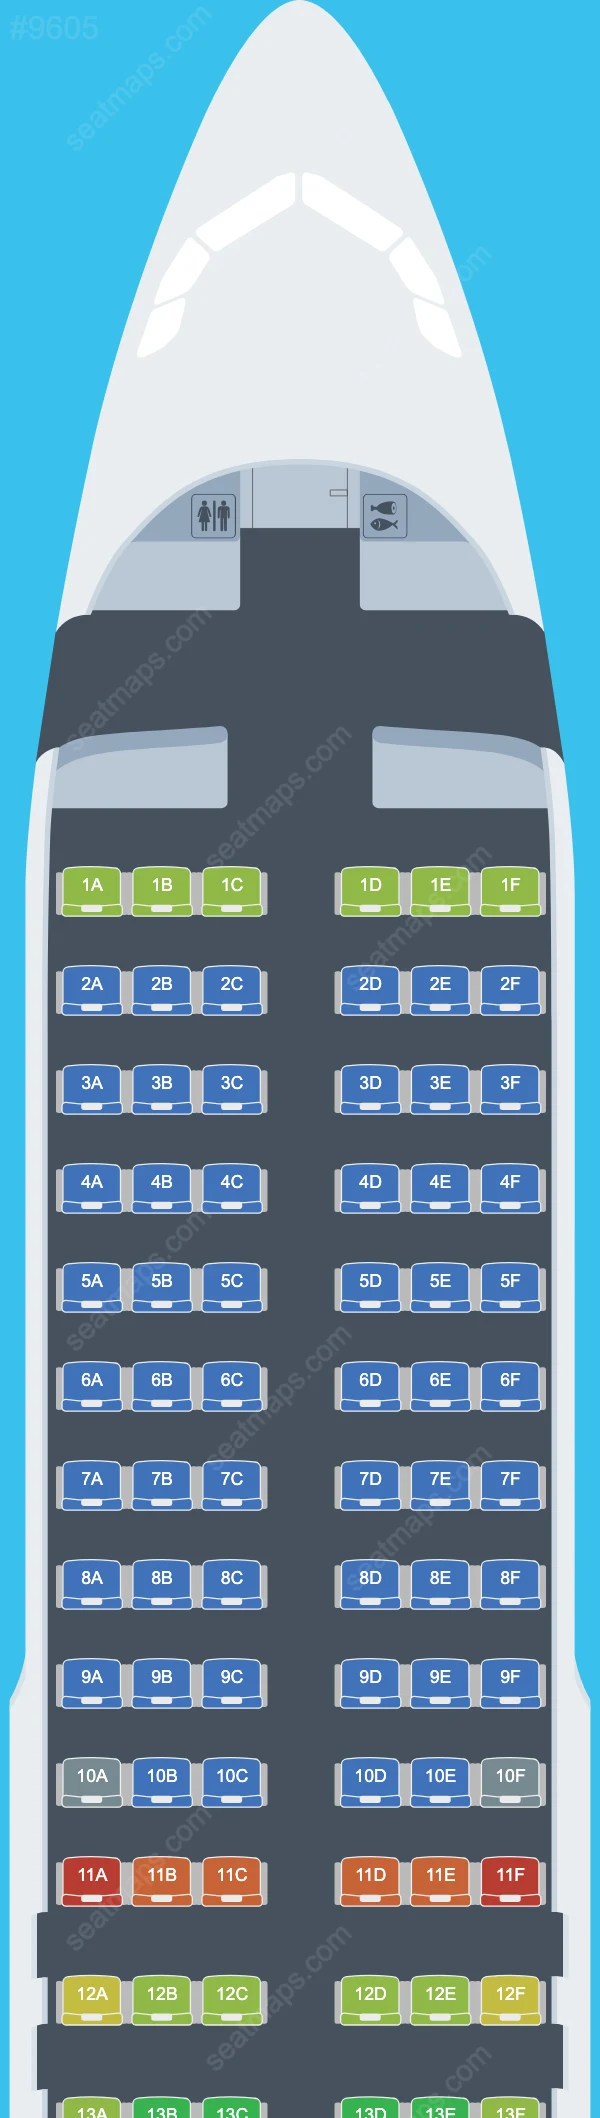 Air Malta Airbus A320 Seat Maps A320-200 V.3